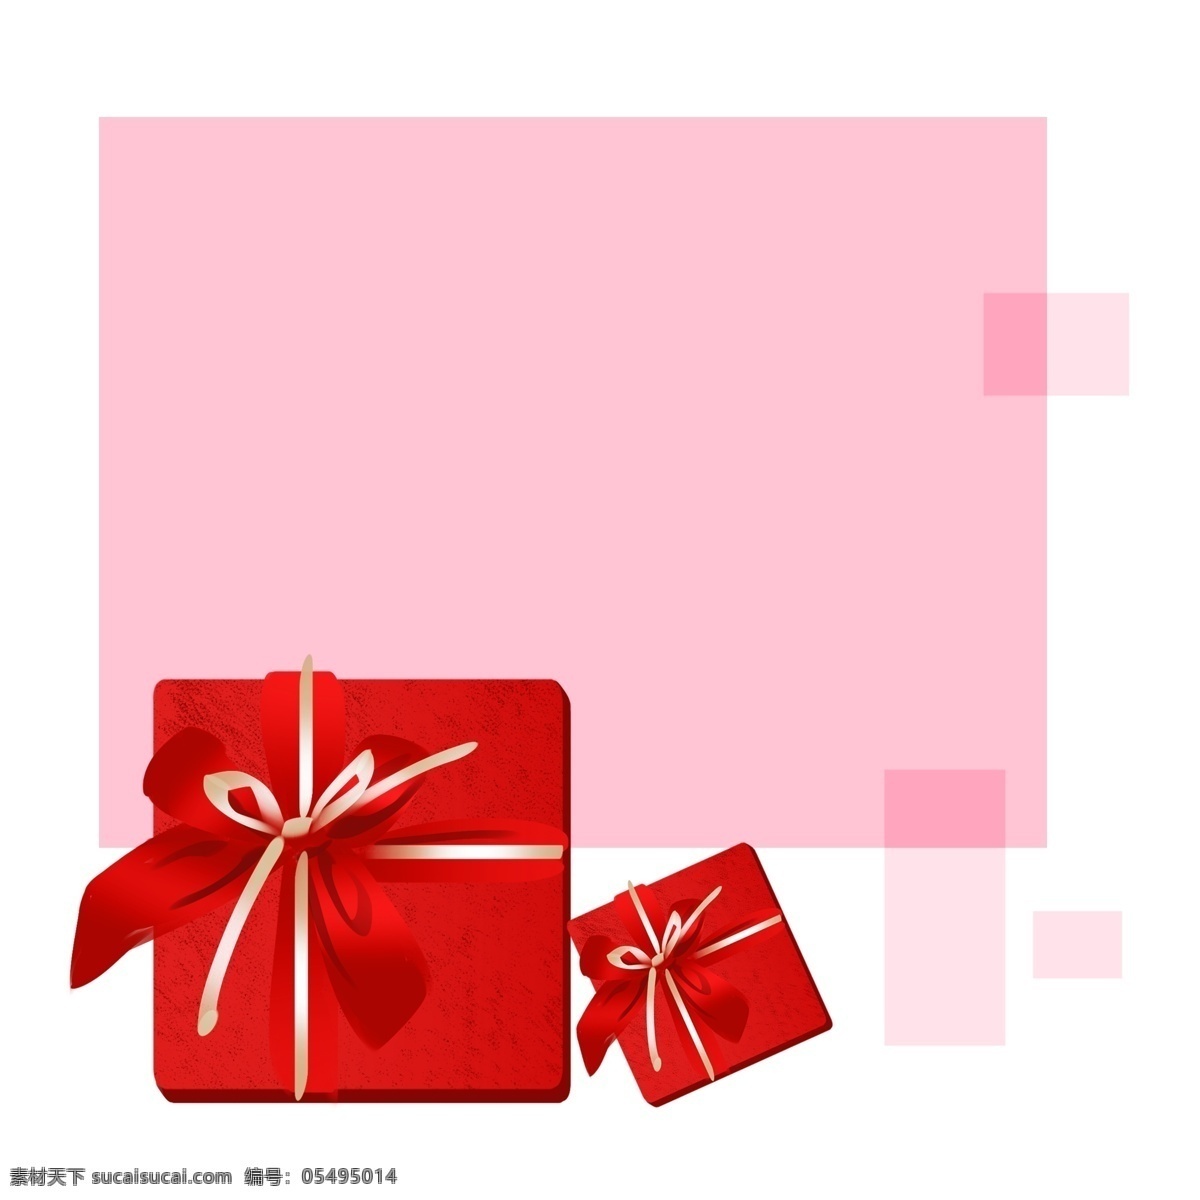 手绘 圣诞 礼物 边框 圣诞礼物 礼物盒 红色 粉色边框 手绘边框 礼物盒插画 圣诞边框 边框插图